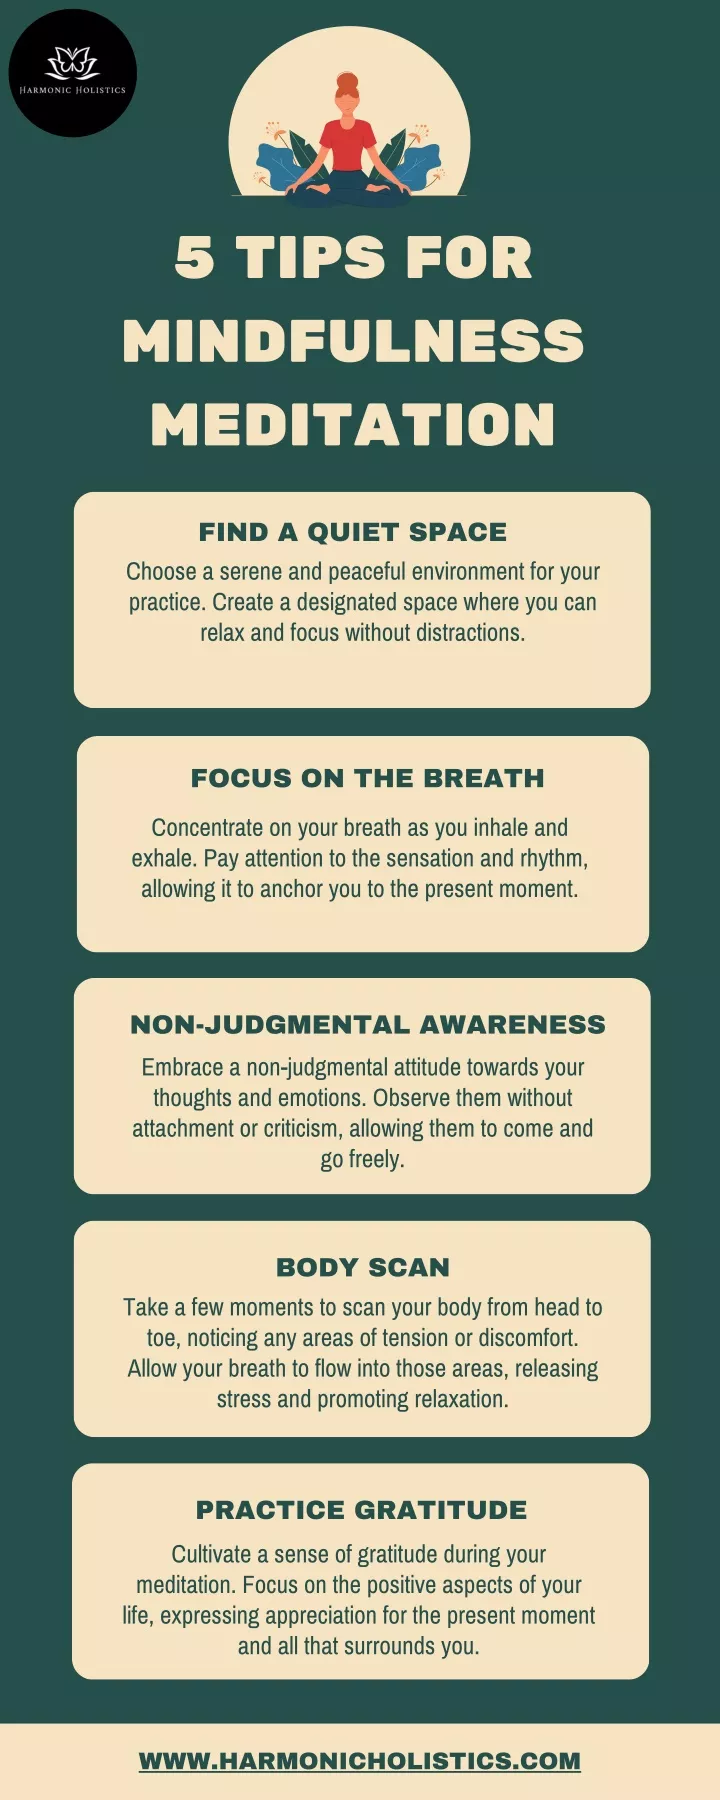 5 tips for mindfulness meditation